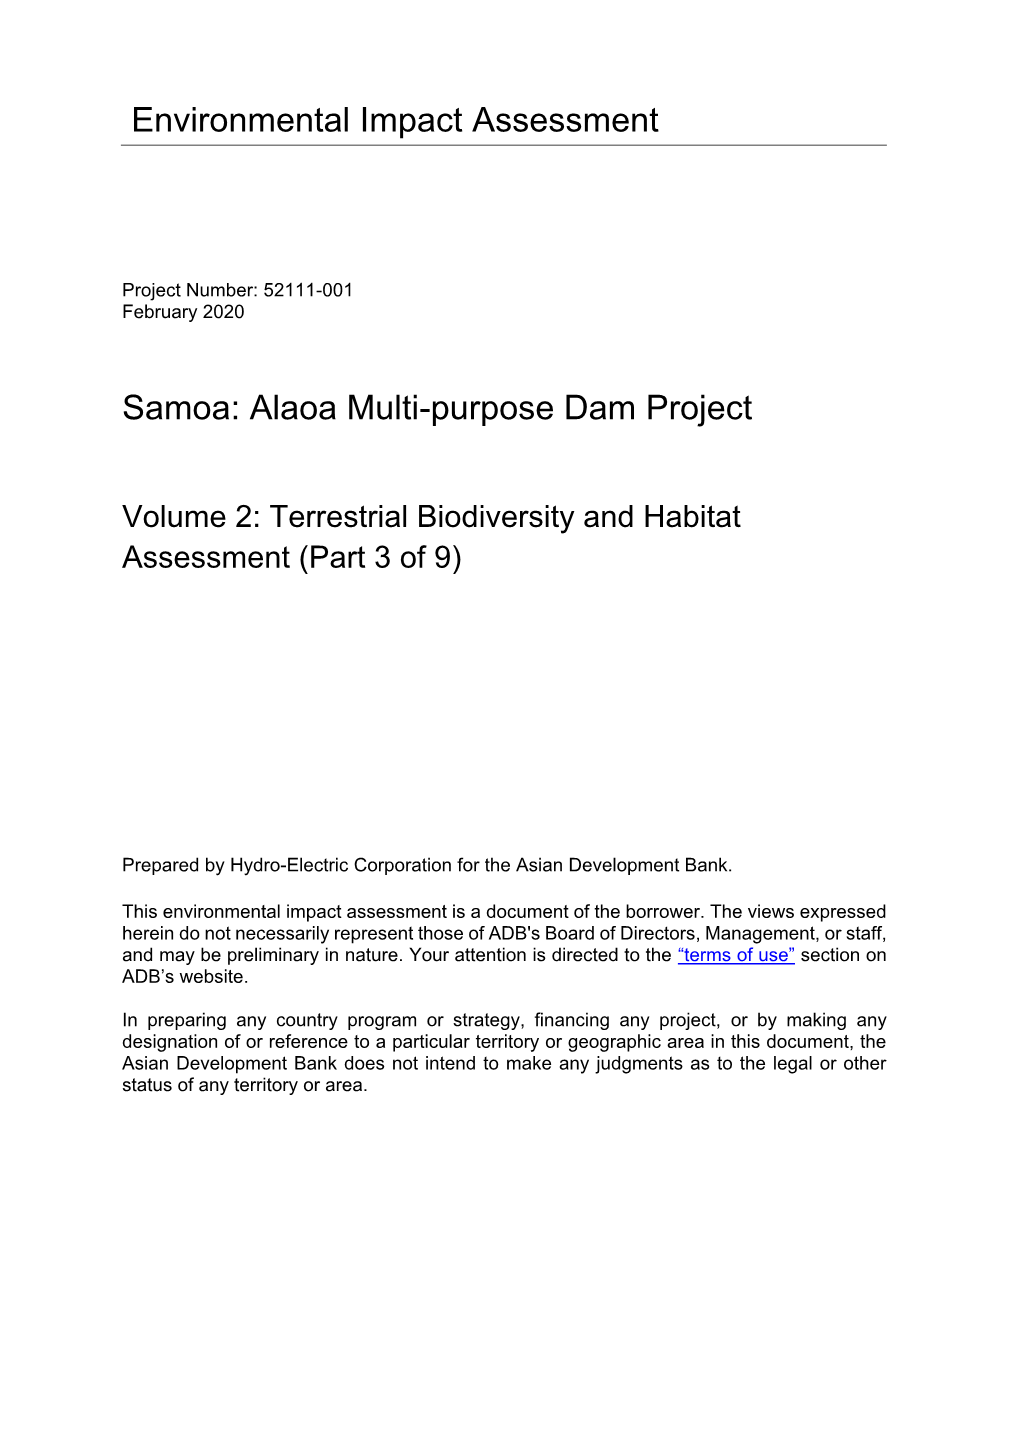 52111-001: Alaoa Multi-Purpose Dam Project